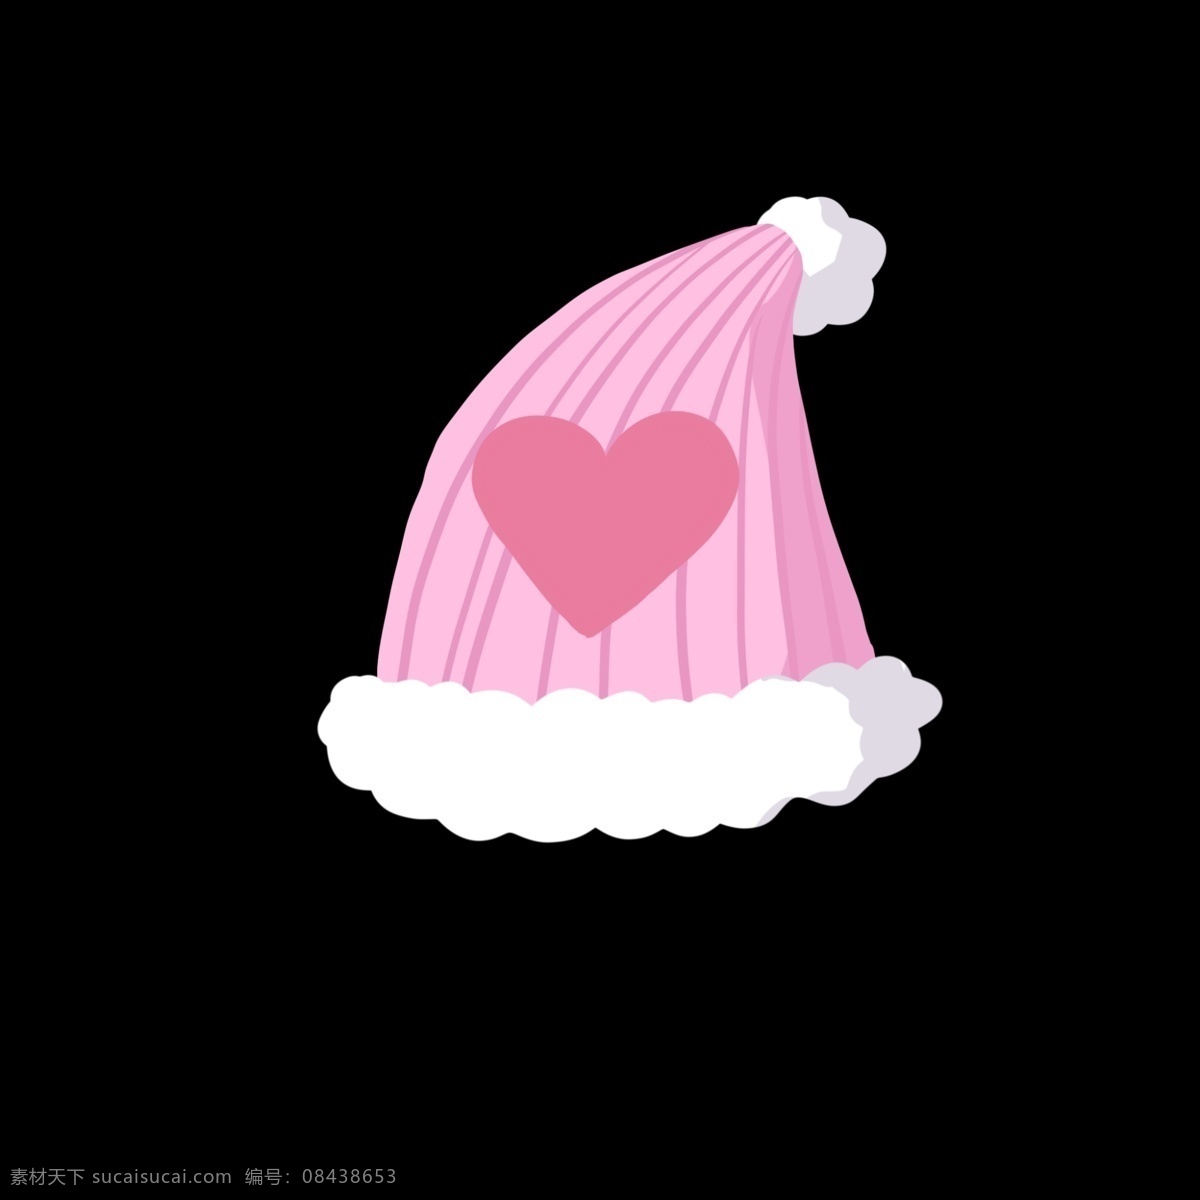 粉色 爱心 毛线 帽子 针织毛线帽子 白色毛绒边边 可爱 少女心爆棚 暖和 冬天 冬日 冬季 桃心